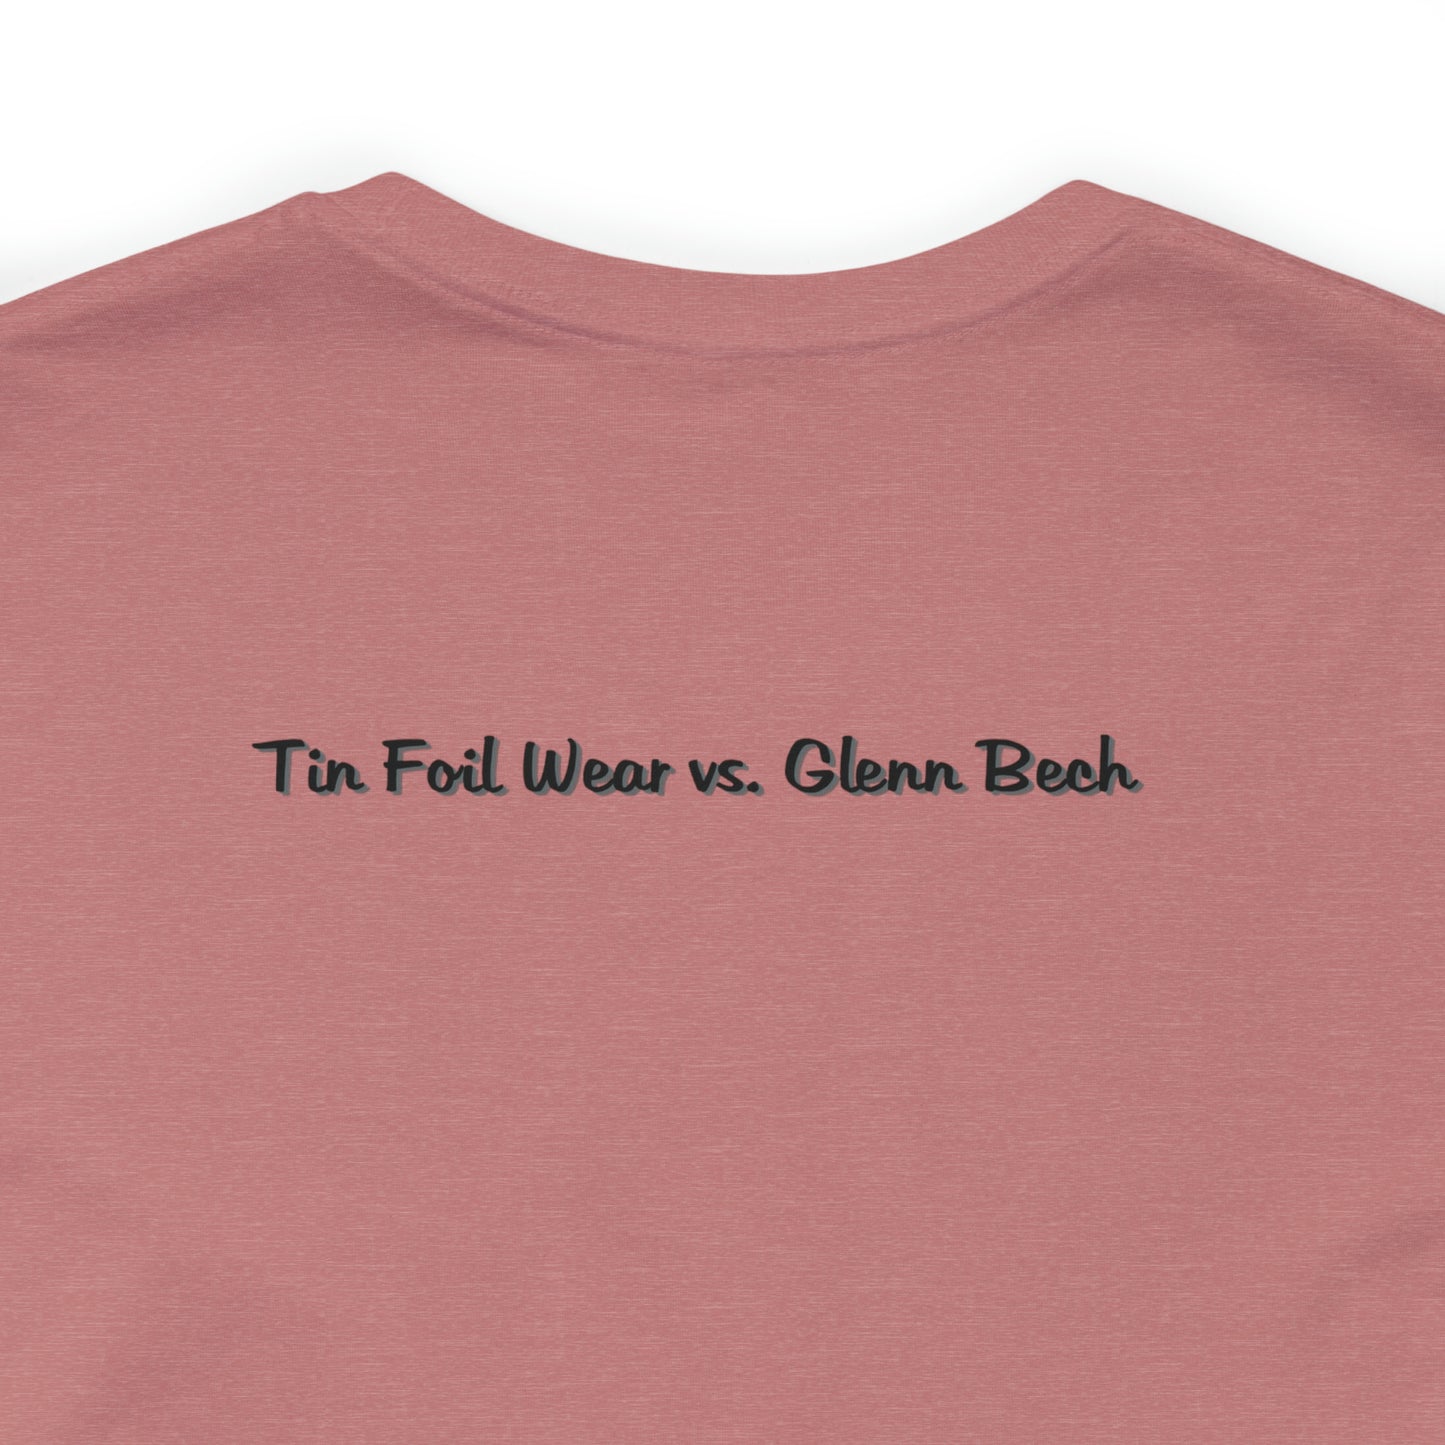 "som mangemillionær mister du retten til at lide" Tin Foil Wear vs. Glenn Bech